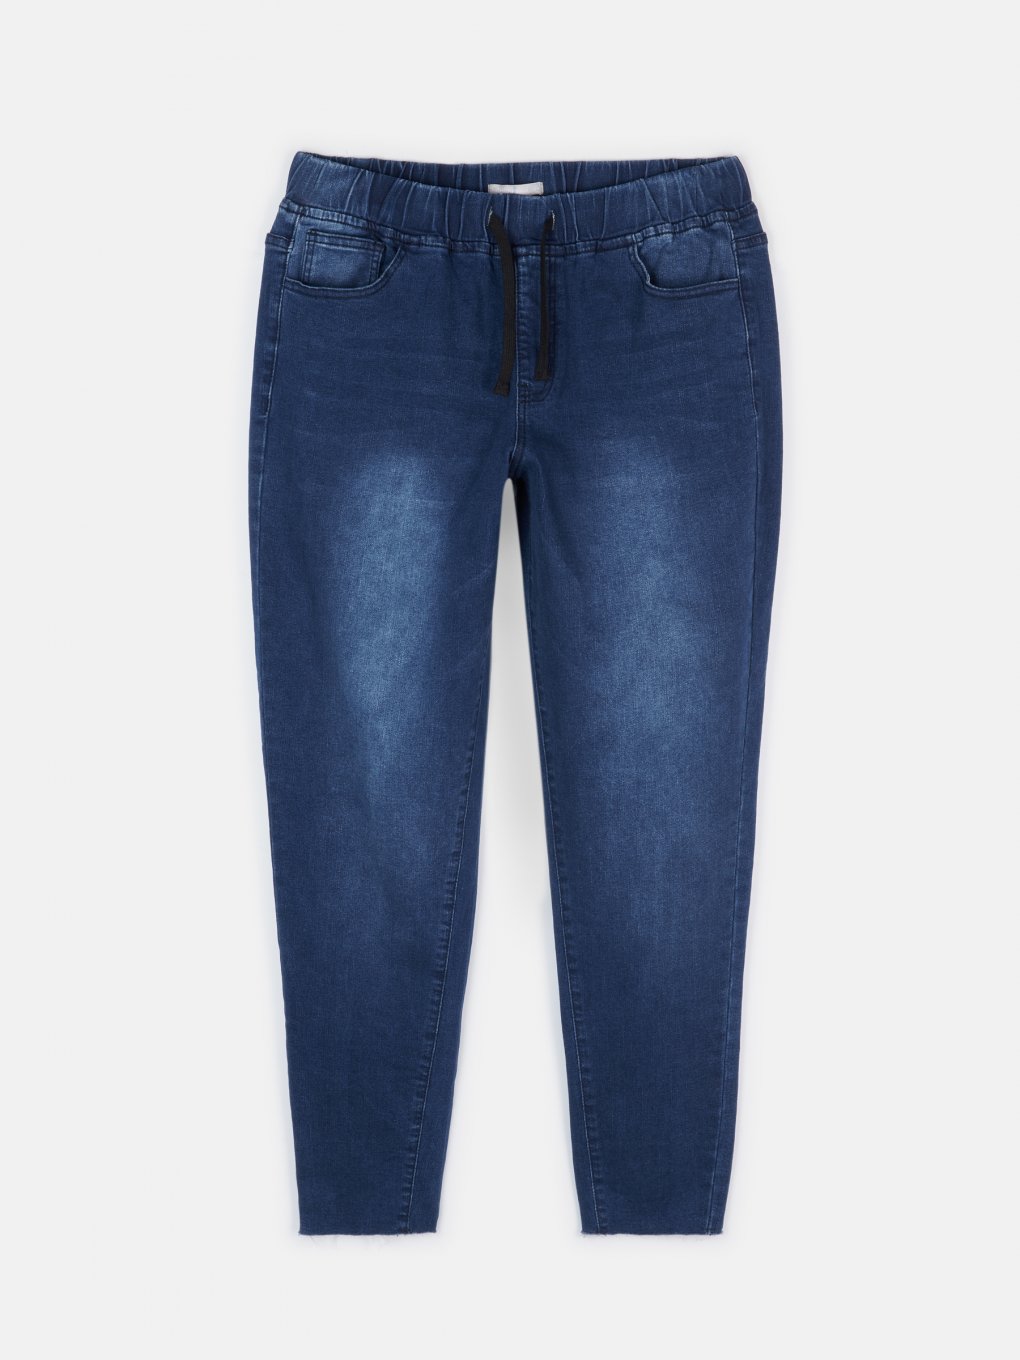 Modré džíny s obnošeným vzhledem s elastickým pasem